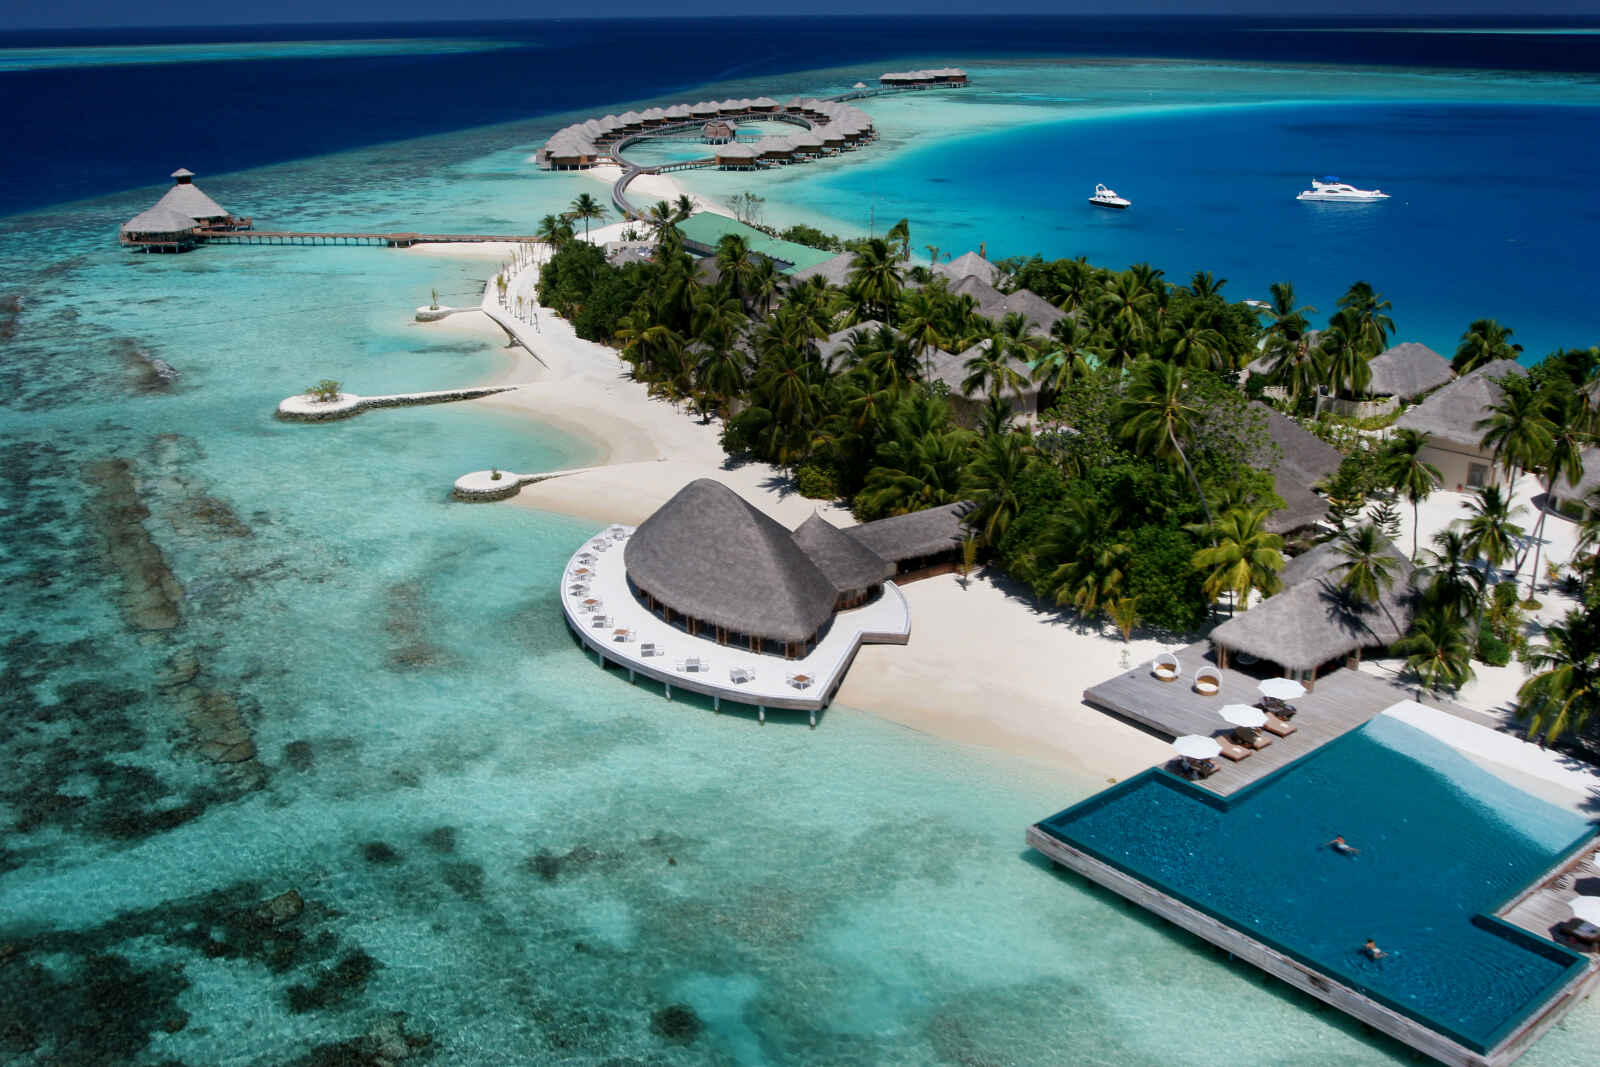 Maldives : Huvafenfushi